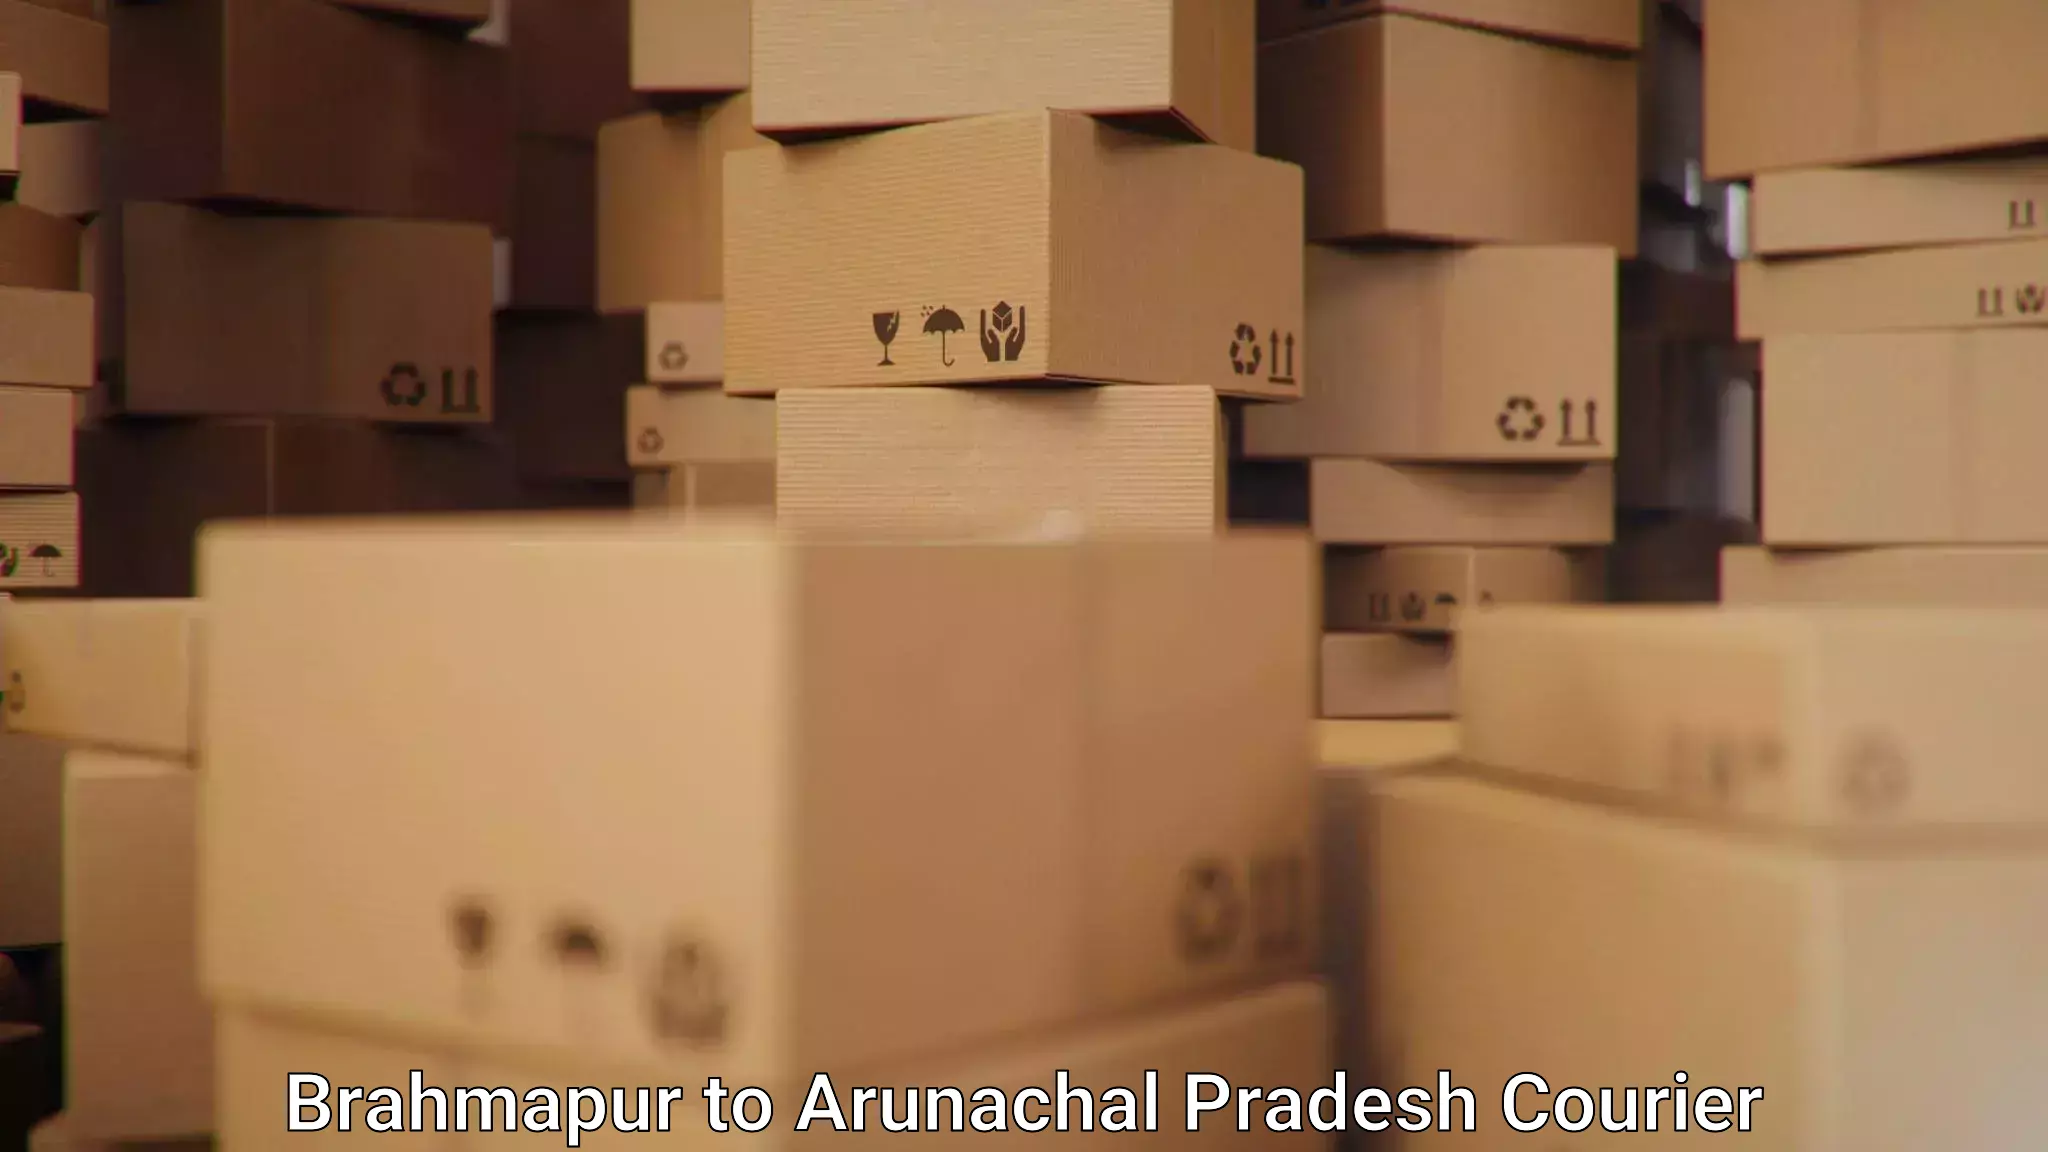 24/7 courier service Brahmapur to Arunachal Pradesh